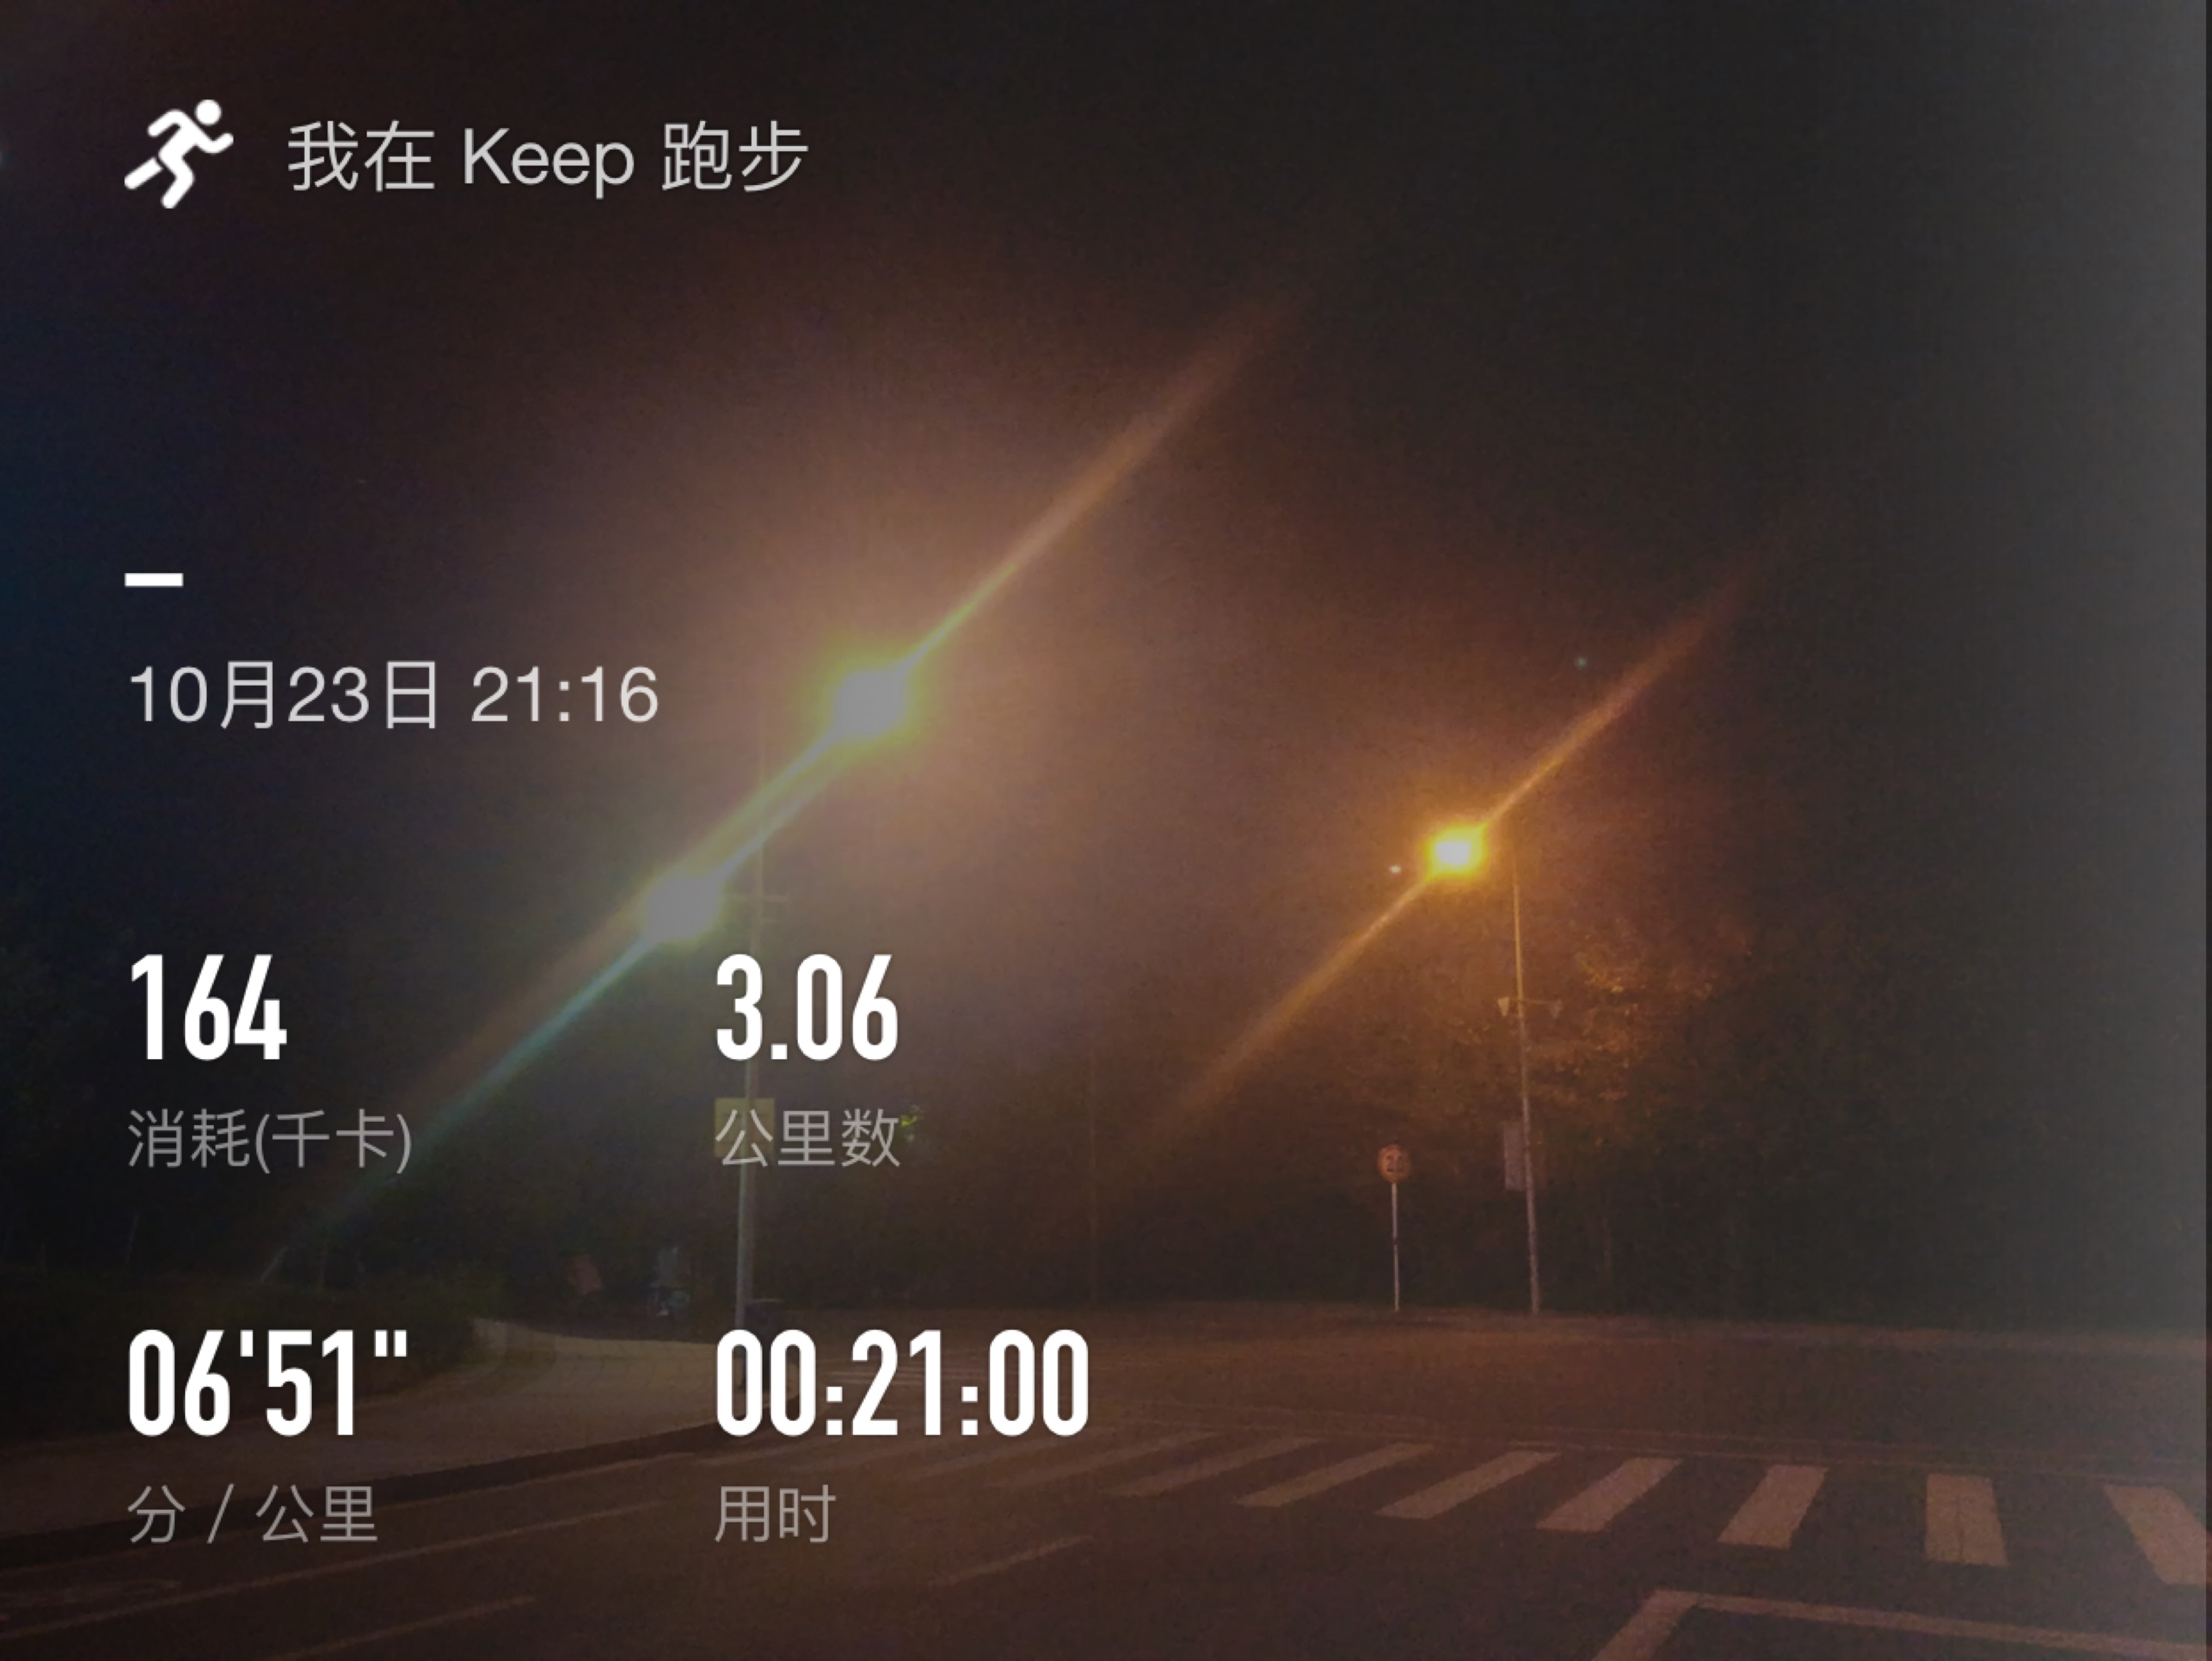 06公里, 21分0秒  开启跑步实况 精彩动态 keep 